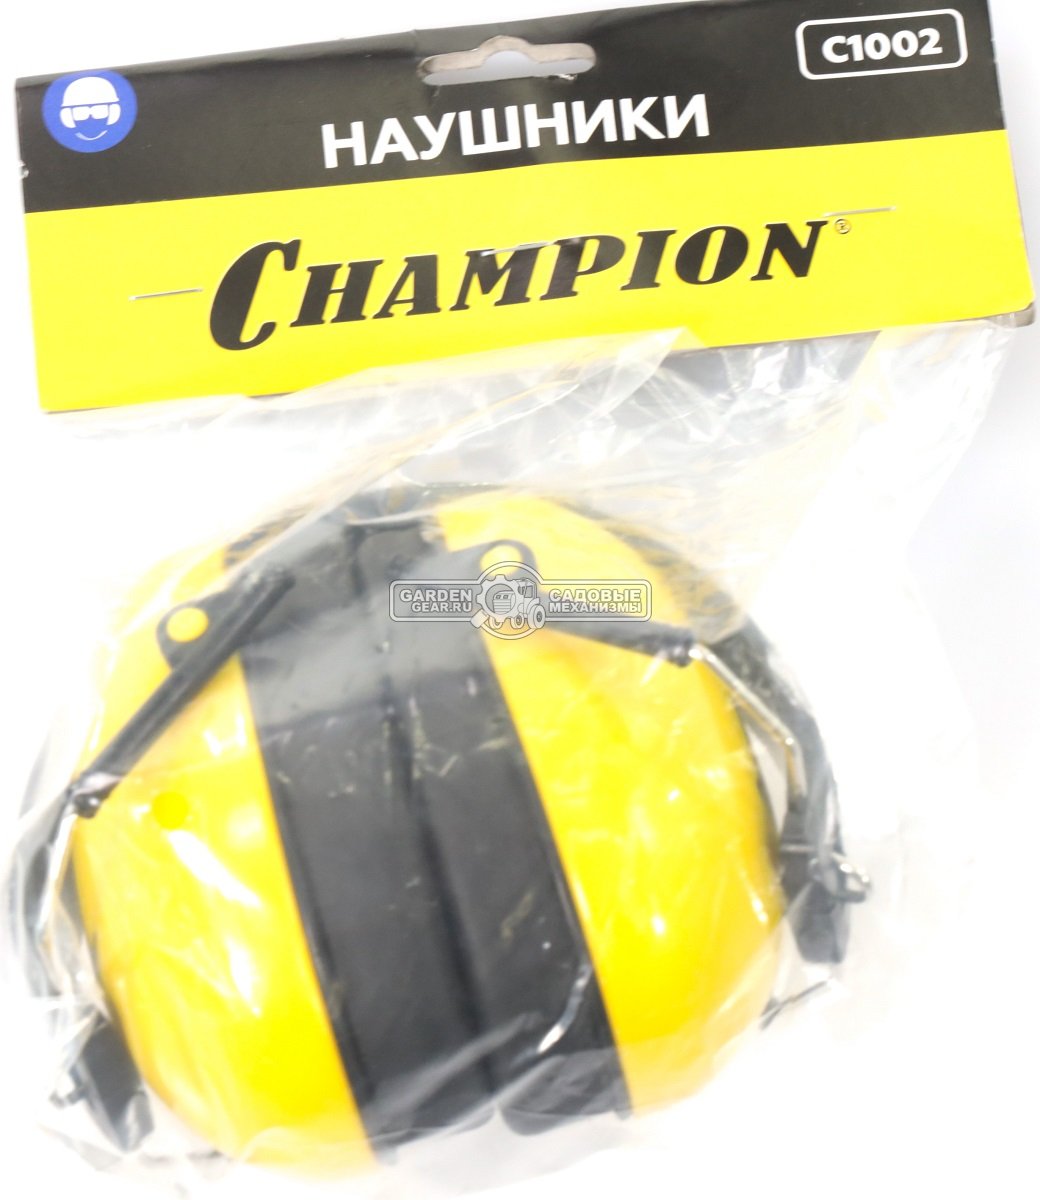 Наушники Champion C1002